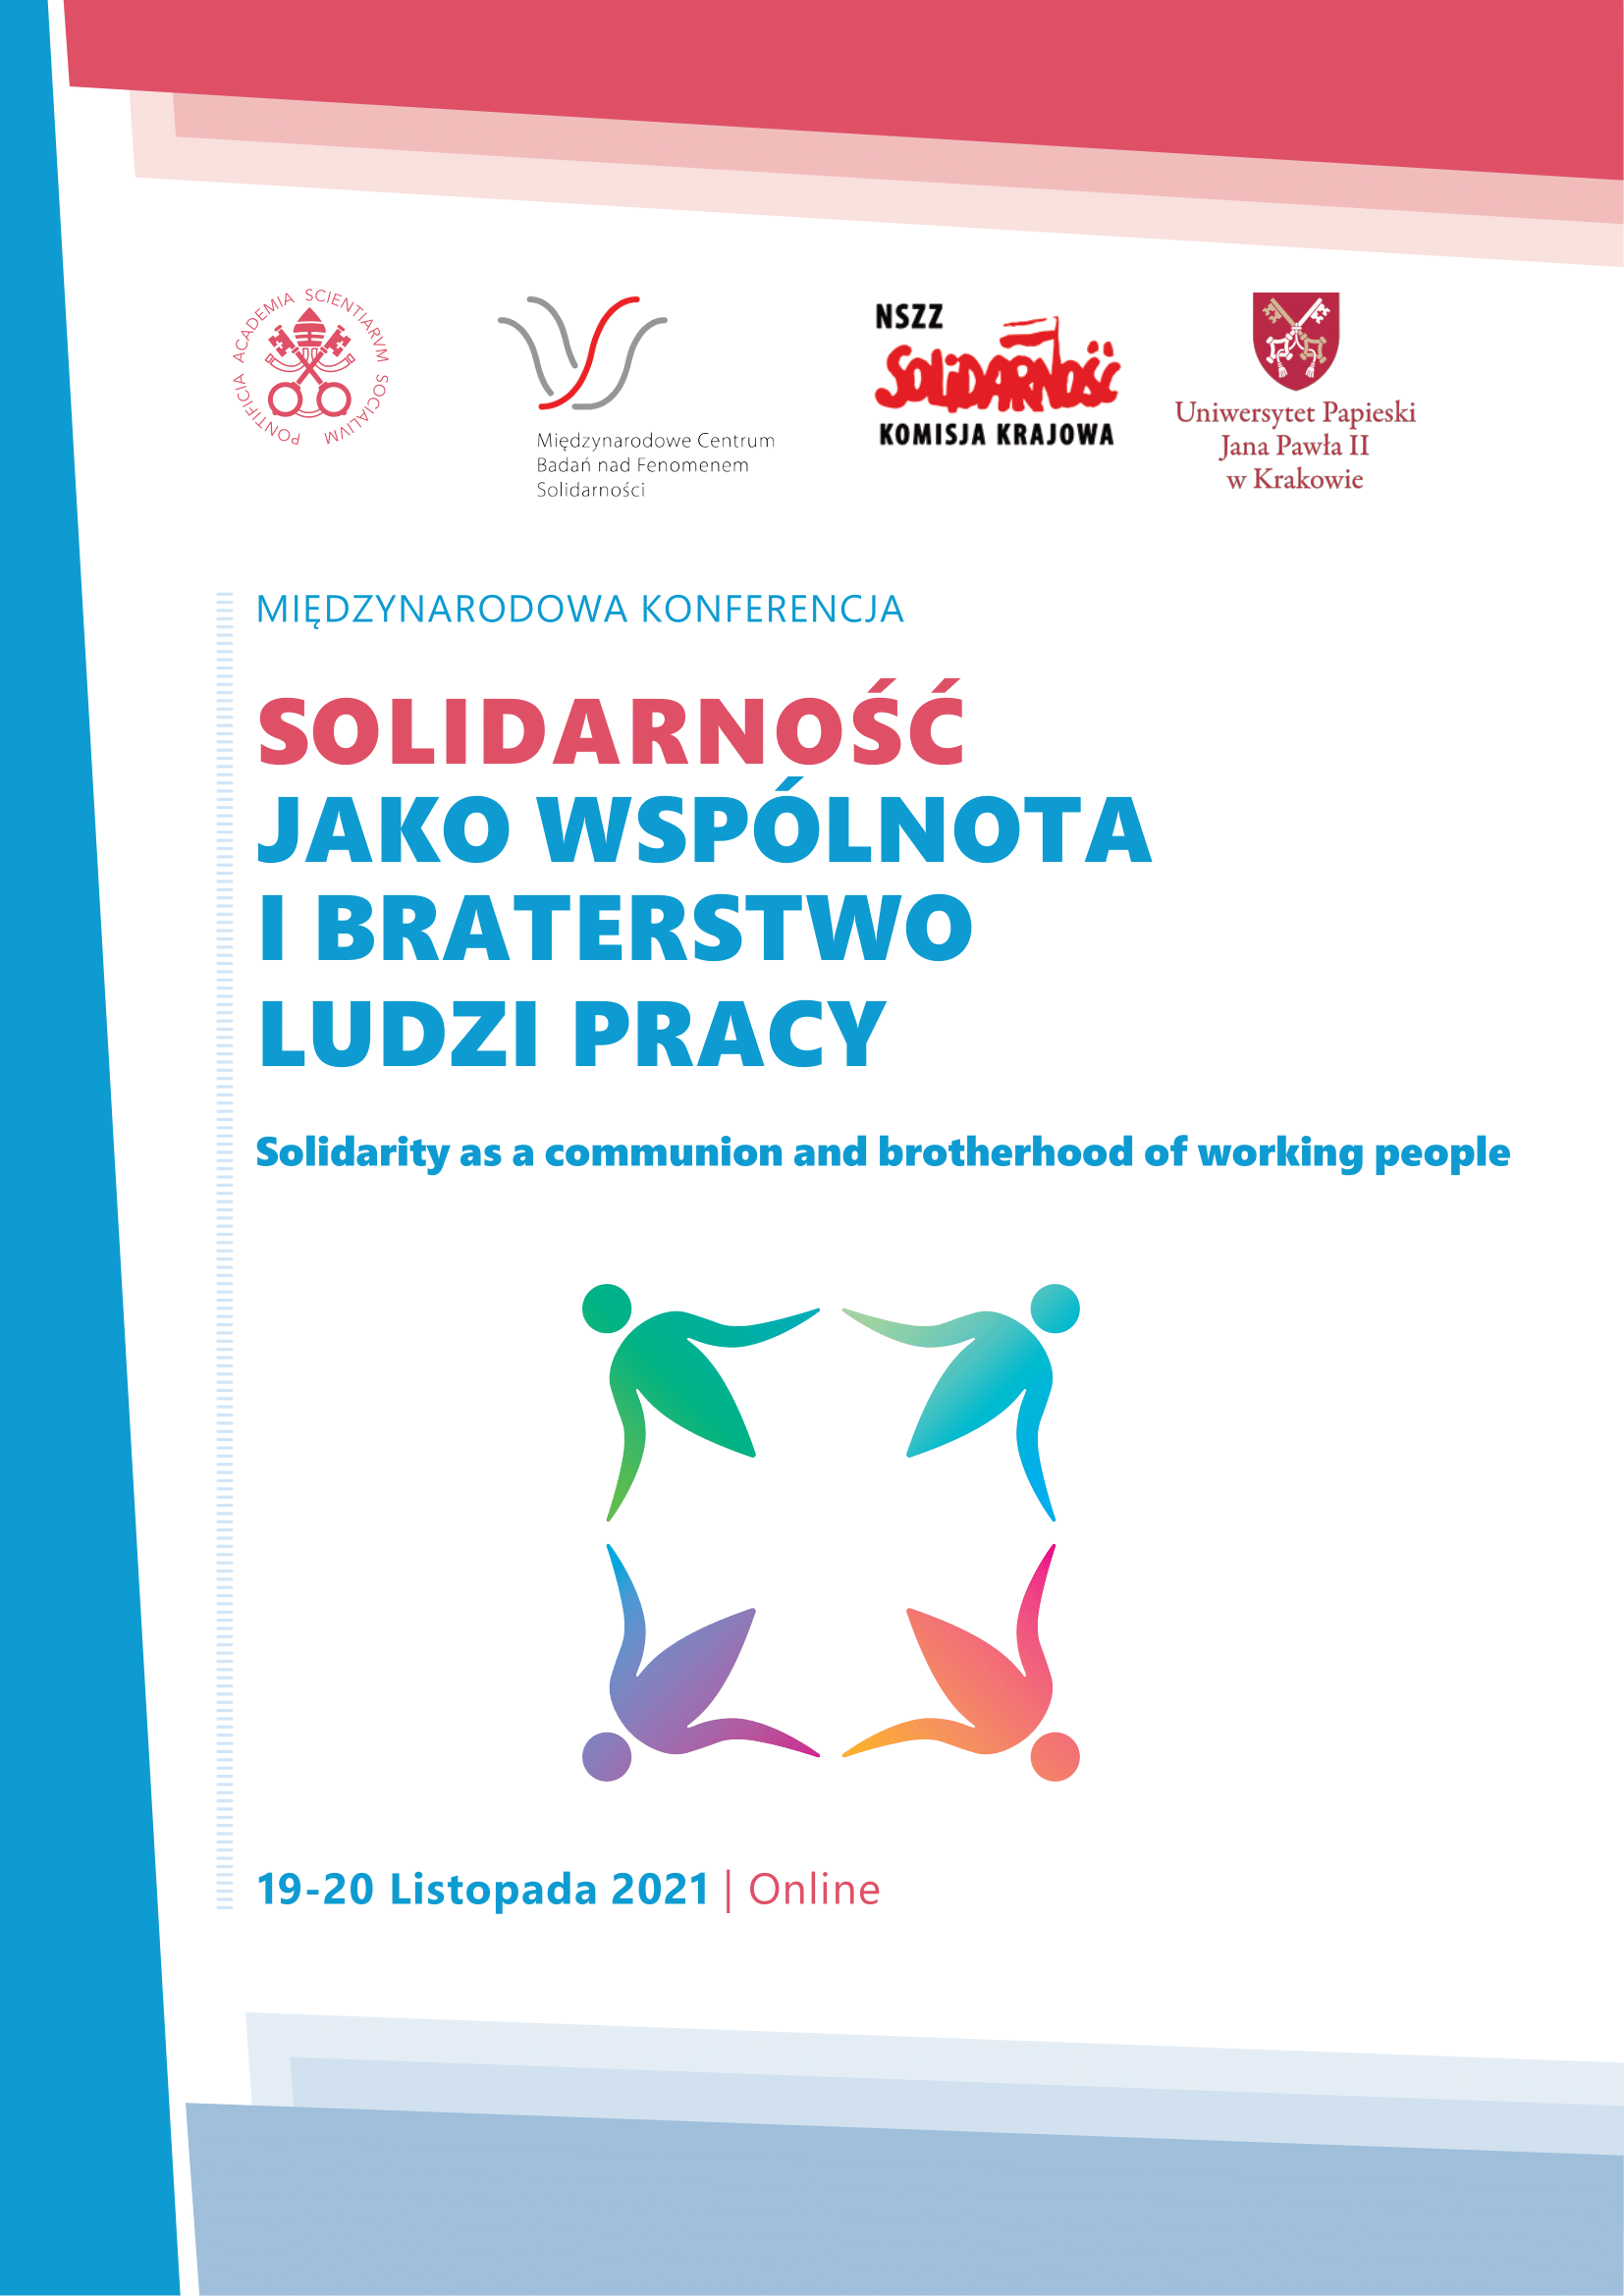 miedzynarodowa_konferencja_solidarnosc_jako_wspolnota_i_braterstwo_ludzi_pracy-1.png